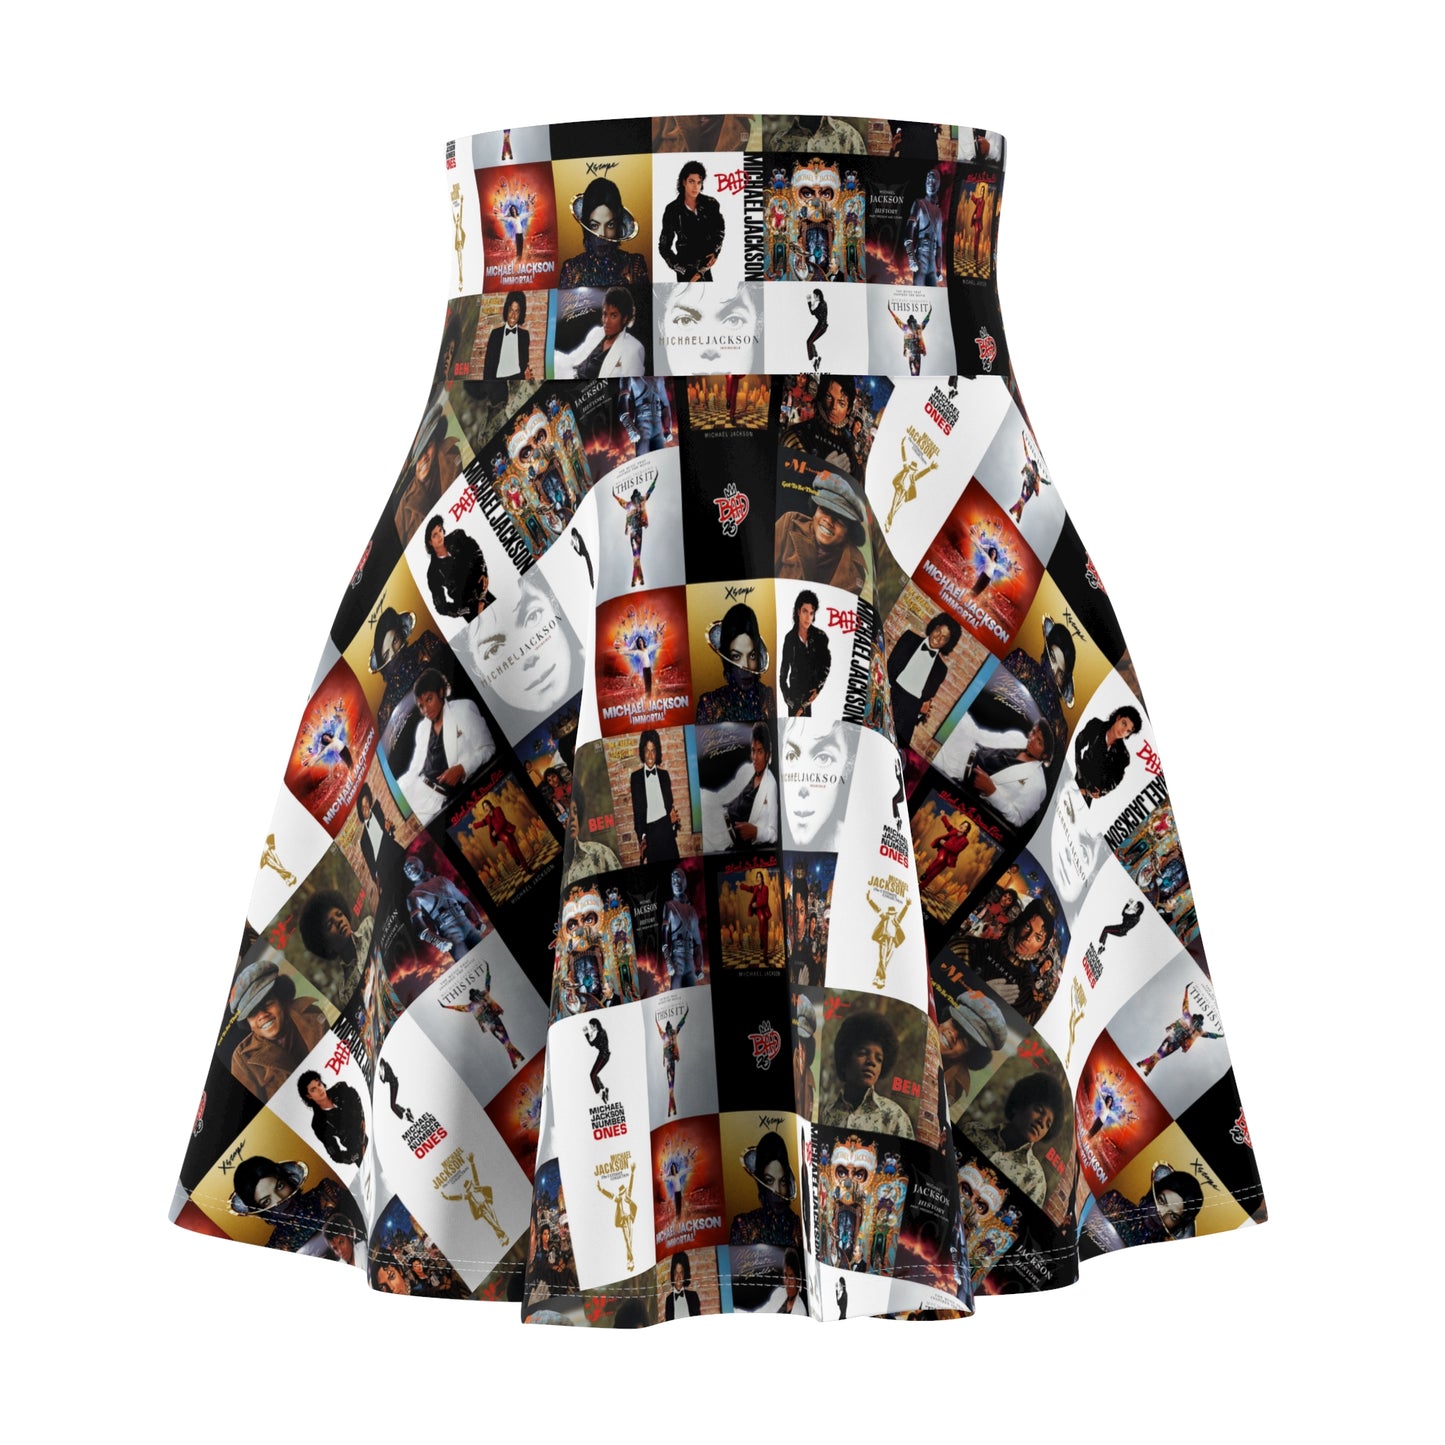 Michael Jackson Album Cover Collage Women's Skater Skirt